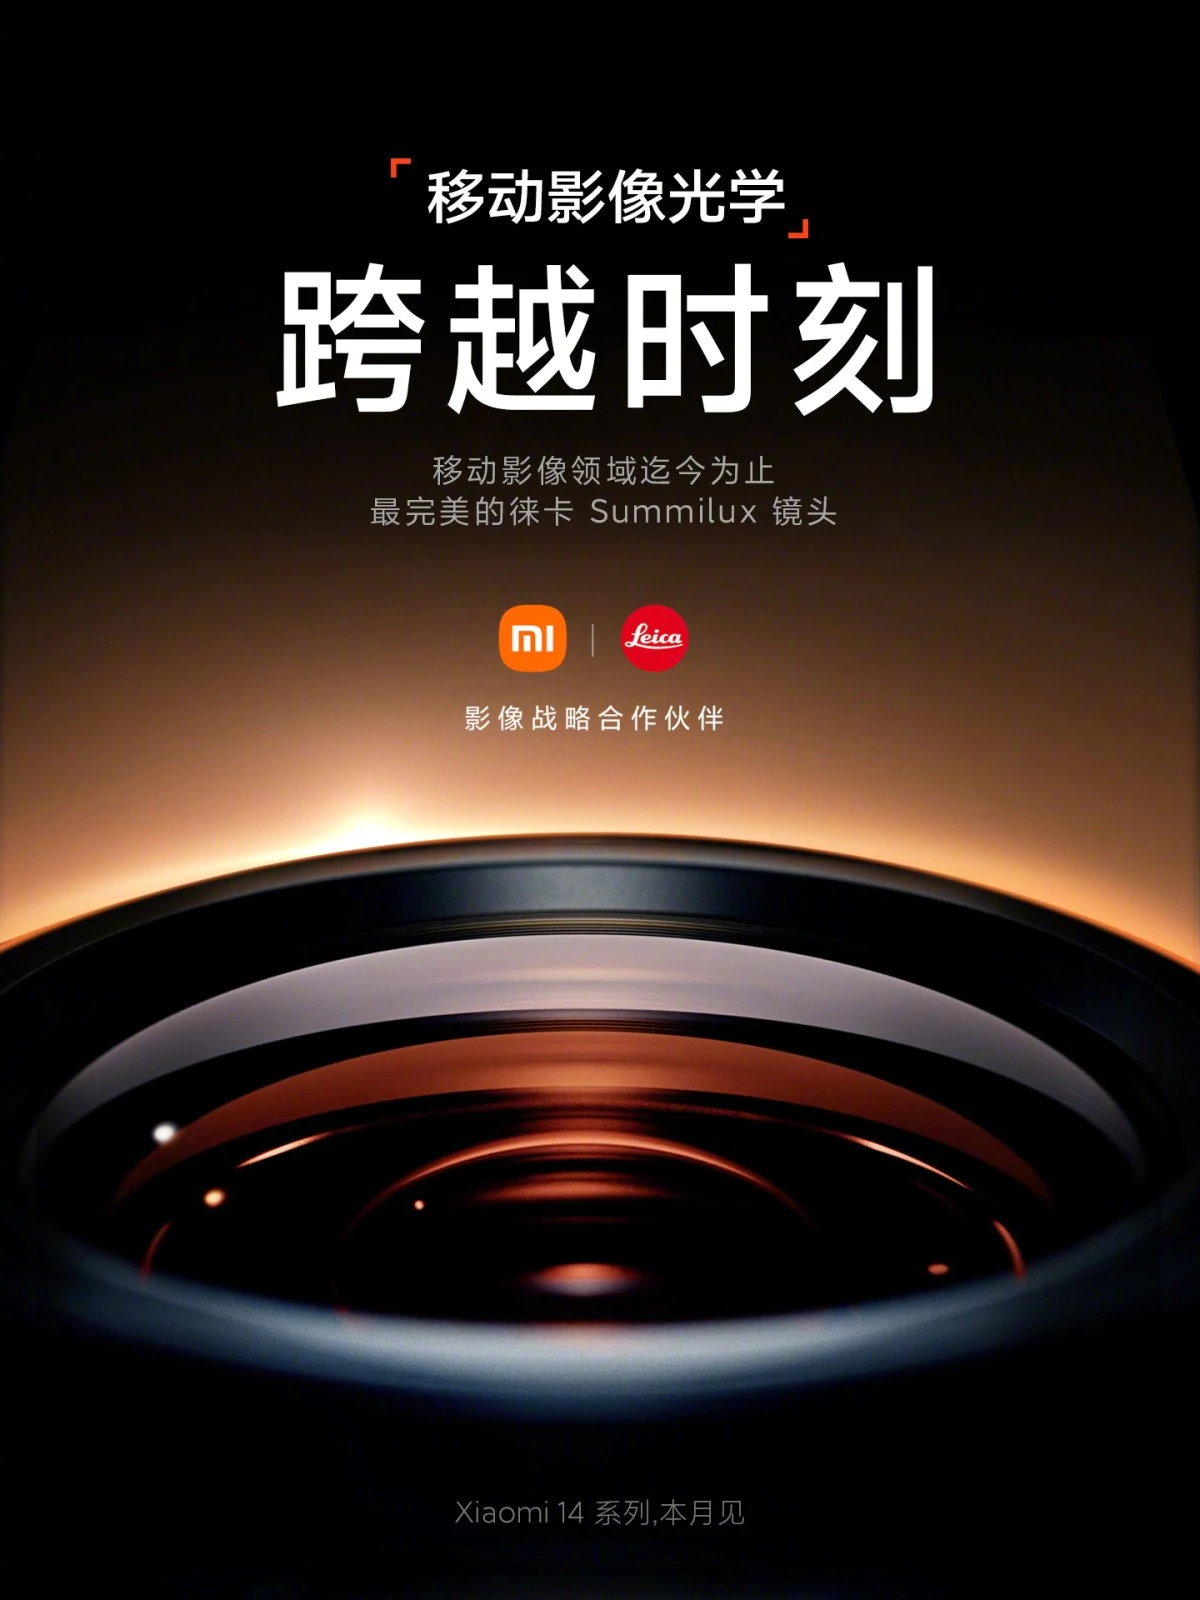 gsmarena 001 5 | hyperos | Xiaomi 14 ได้ฤกษ์เปิดตัวเดือนนี้ พร้อมจับคู่ Leica เช่นเดิม